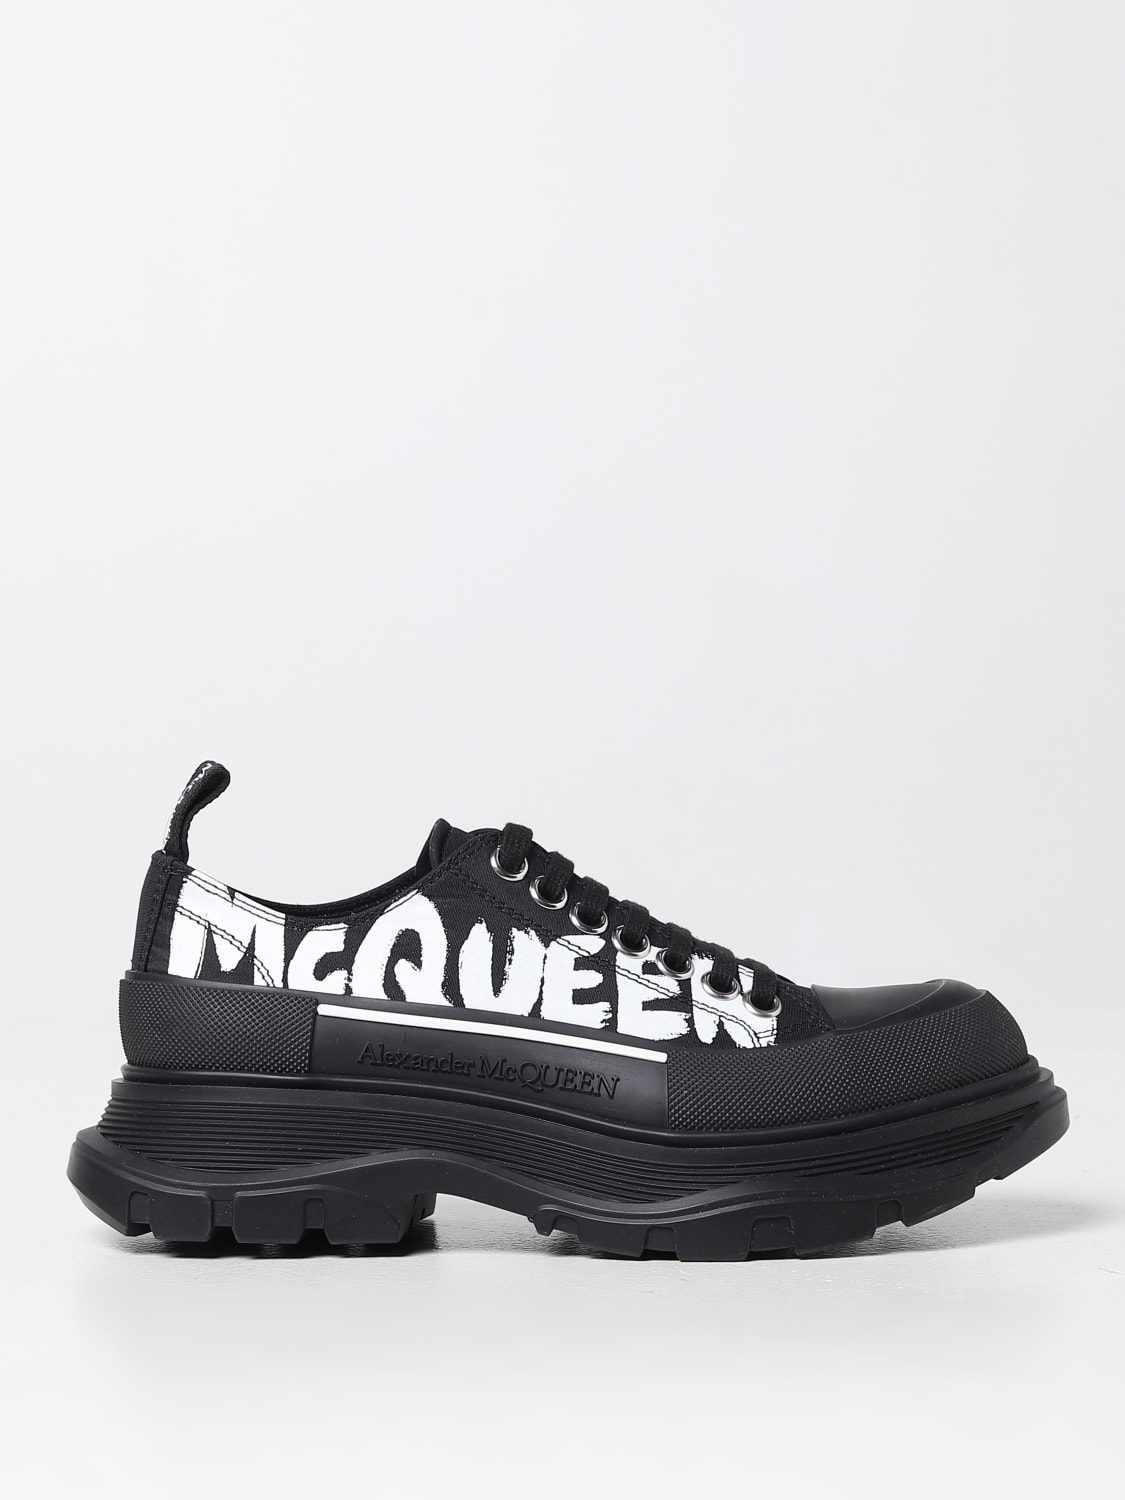 Sneakers Tread Slick Alexander McQueen in nylon